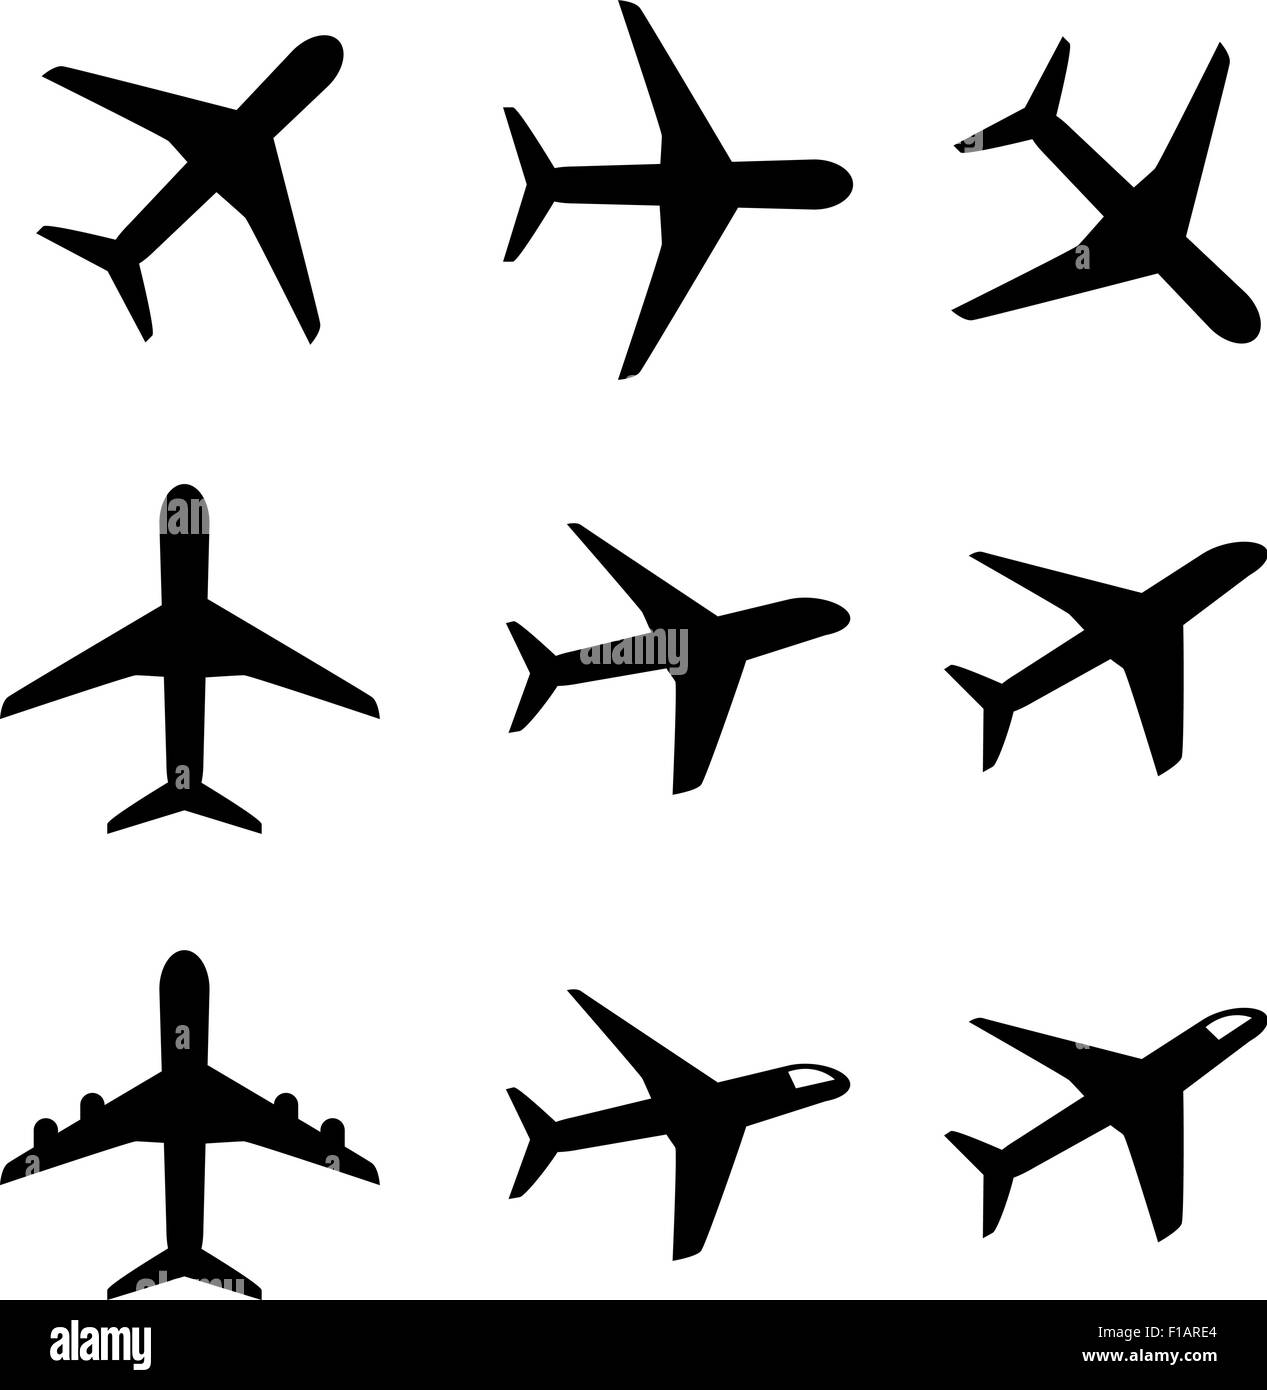 Reihe von Flugzeug-Ikone und Symbol in der Silhouette Art Stock Vektor